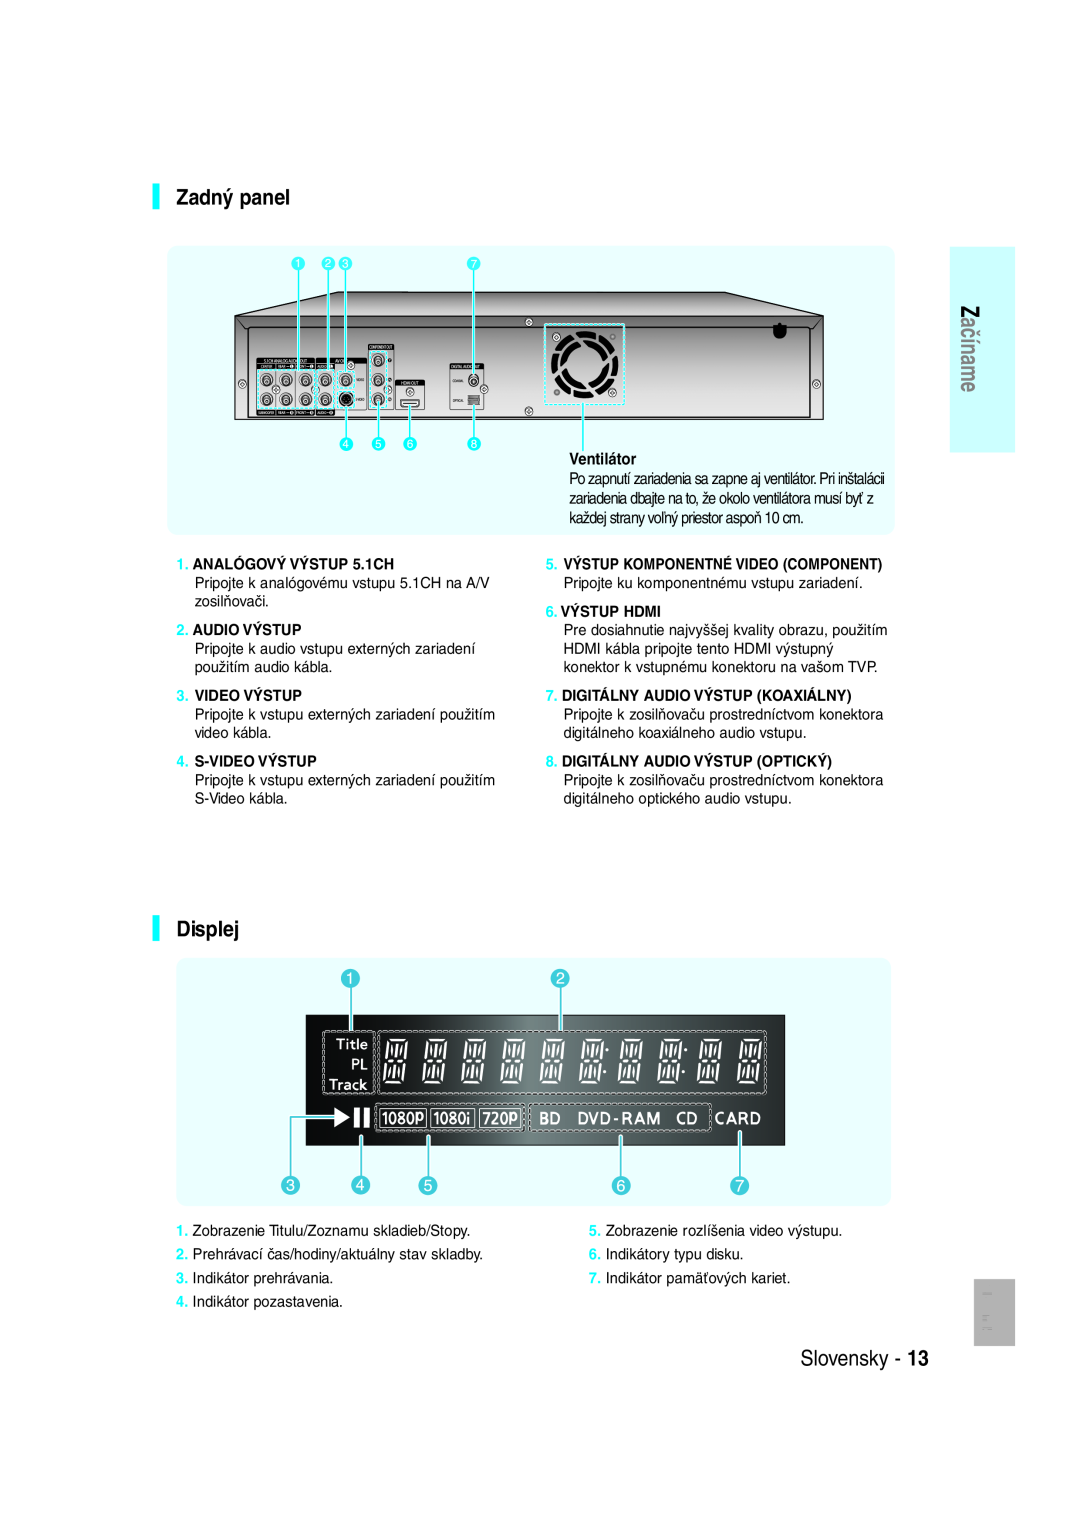 Samsung BD-P1000/XEN manual Zadný panel, Displej, ANALÓGOVÝ VÝSTUP 5.1CH, Audio Výstup, S-Video Výstup, 6. VÝSTUP HDMI 